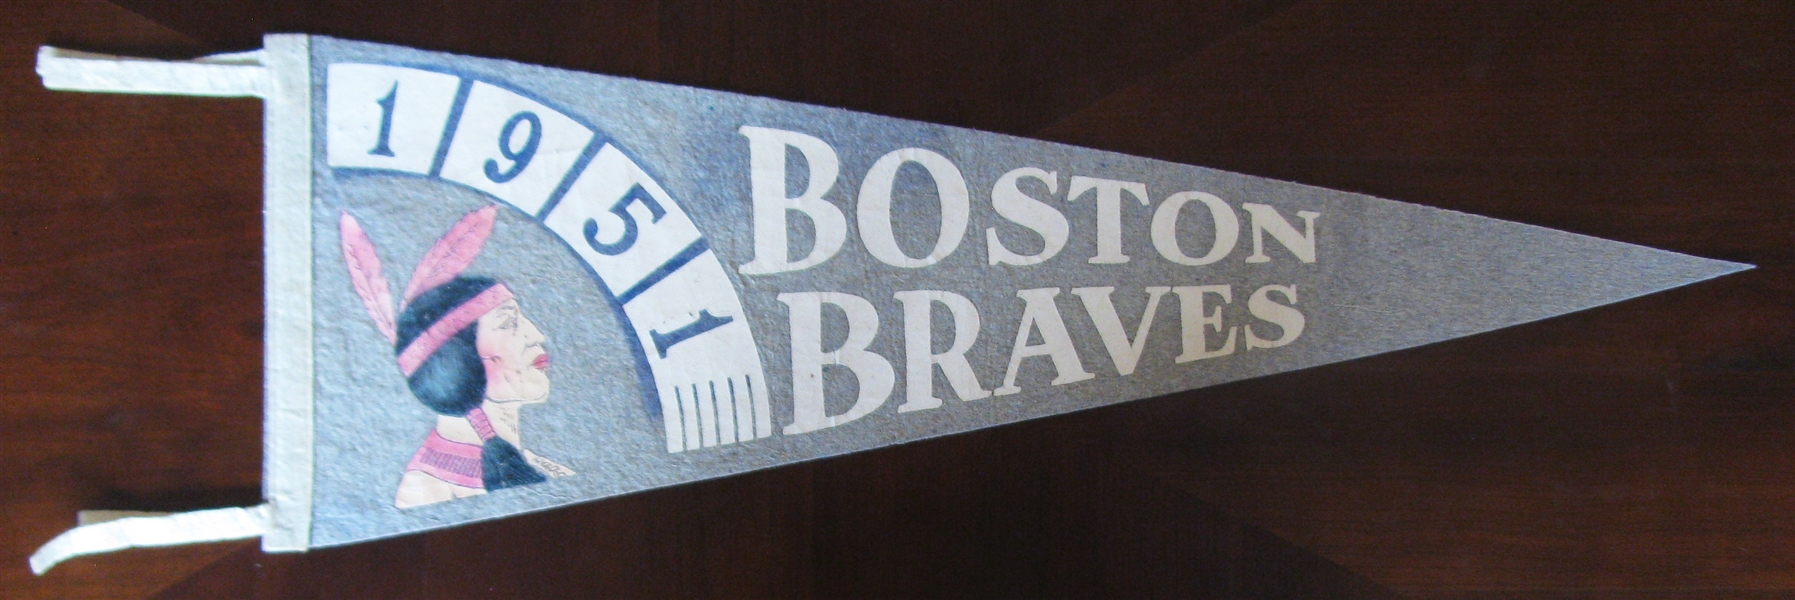 1951 BOSTON BRAVES BASEBALL PENNANT